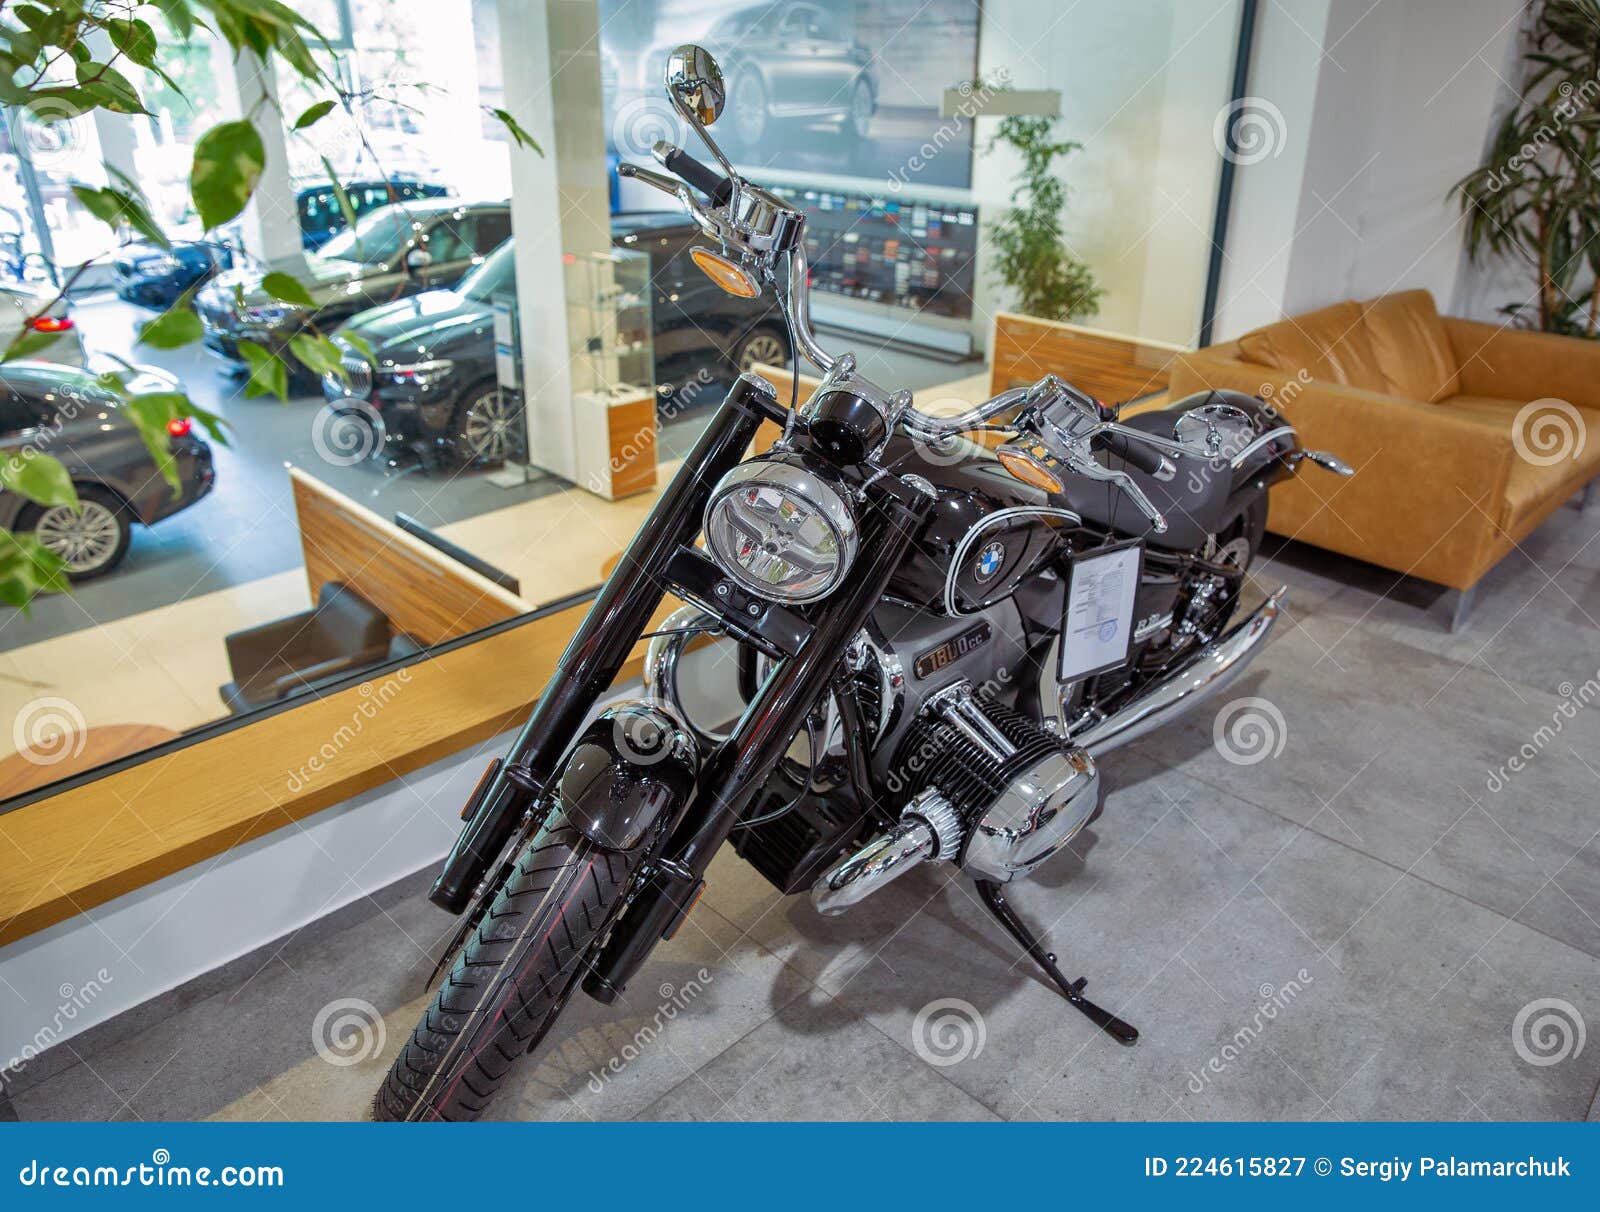 现代宝马摩托车在经销公司展示 乌克兰图库摄影片 图片包括有城市 出售 优质 布琼布拉 经销权